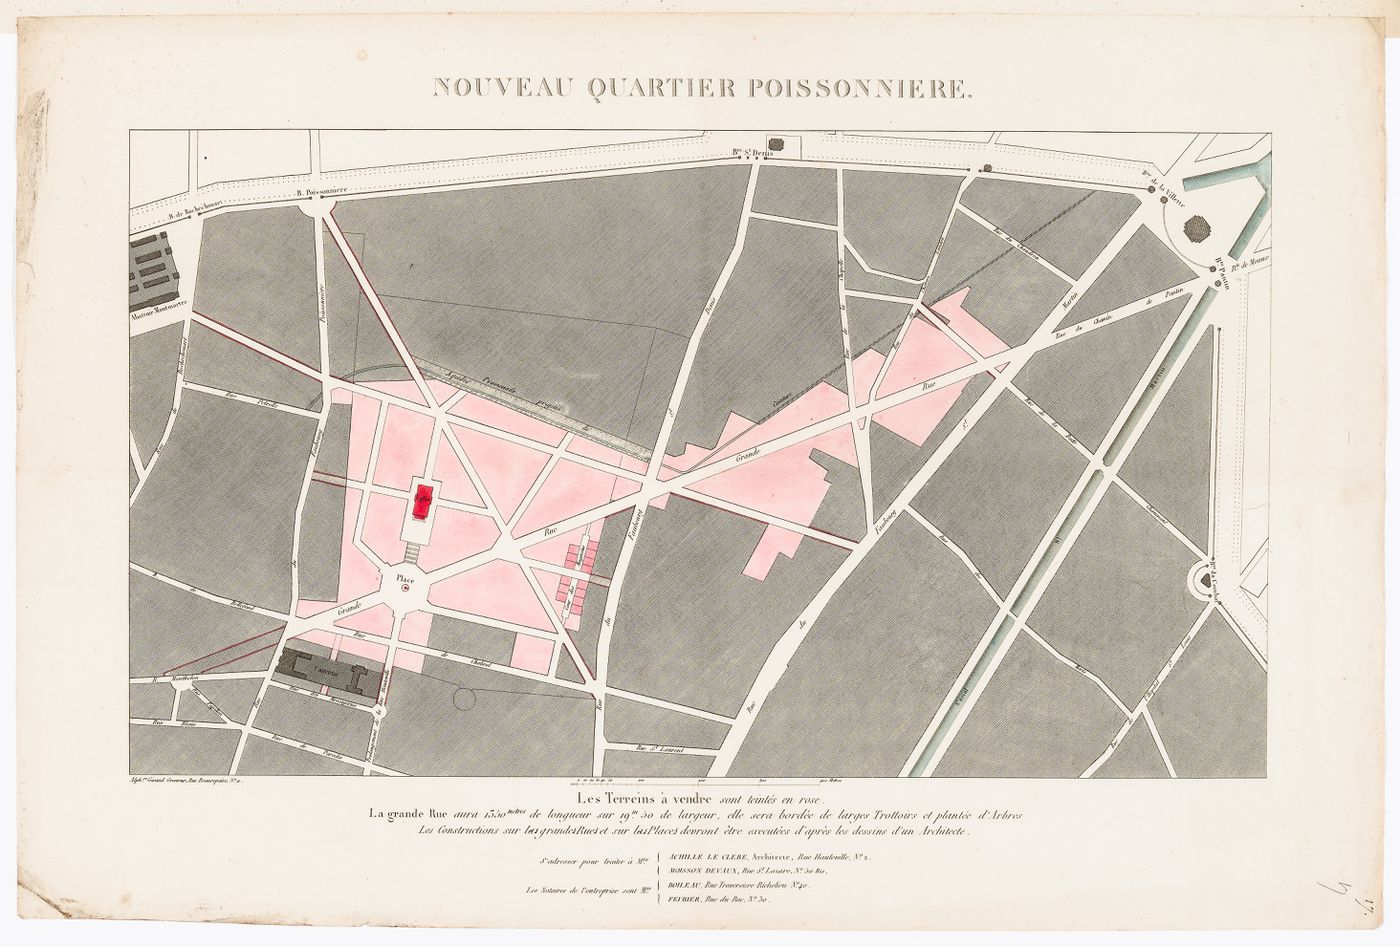 Site plan for the nouveau quartier Poissonnière showing the proposed rue La Grande